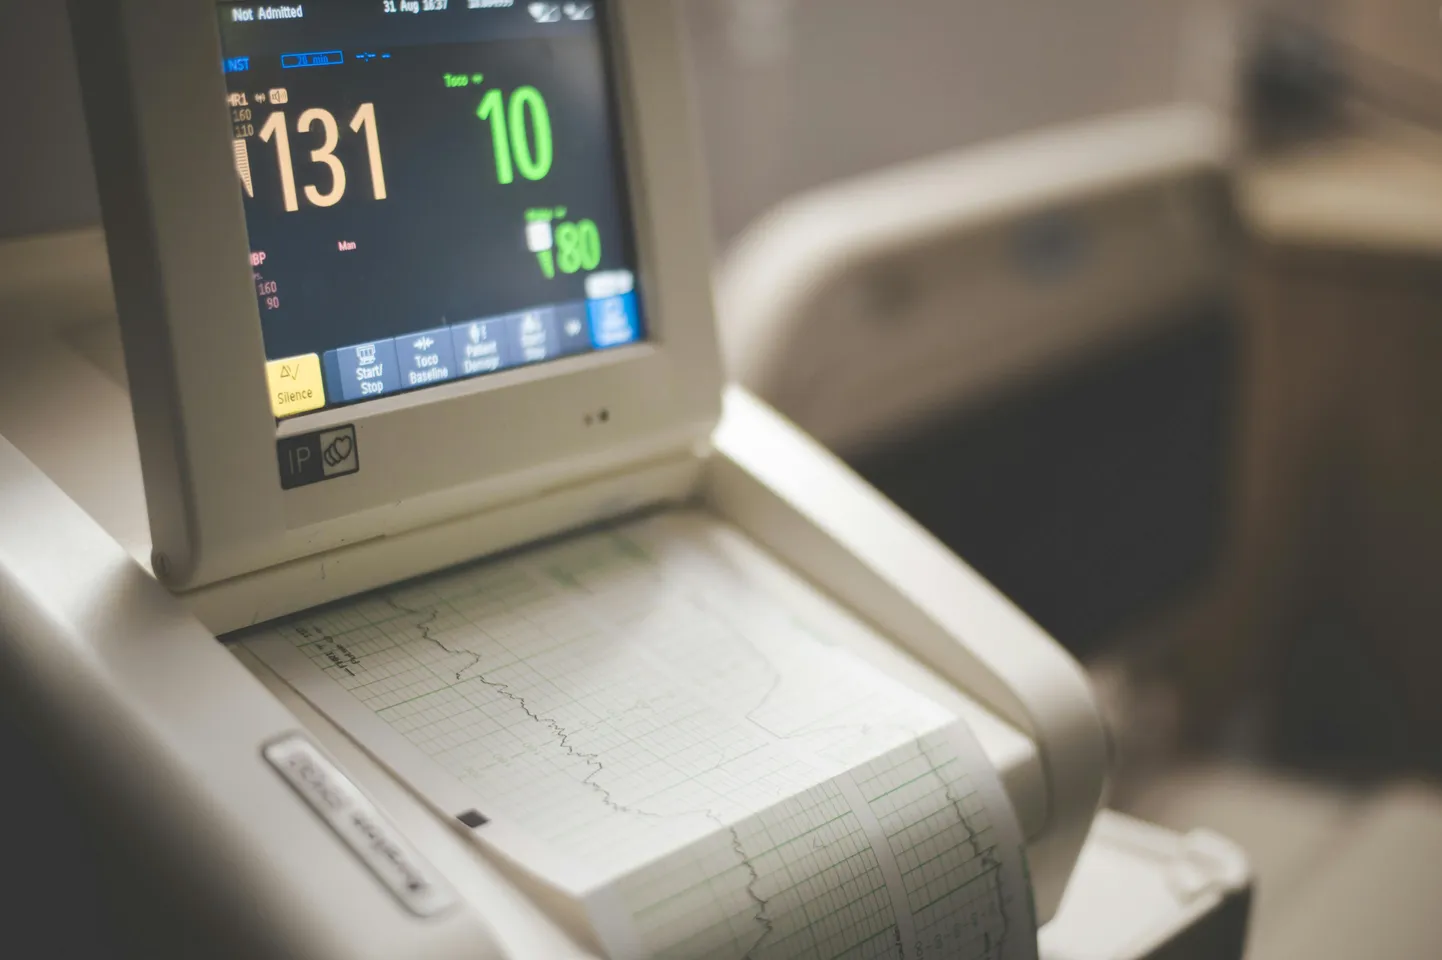 Kui lasta tehisarul lugeda elektrokardiogramme, võib päästa suure hulga patsientide elu, selgus teadlaste uuringust. Pilt on illustreeriv.